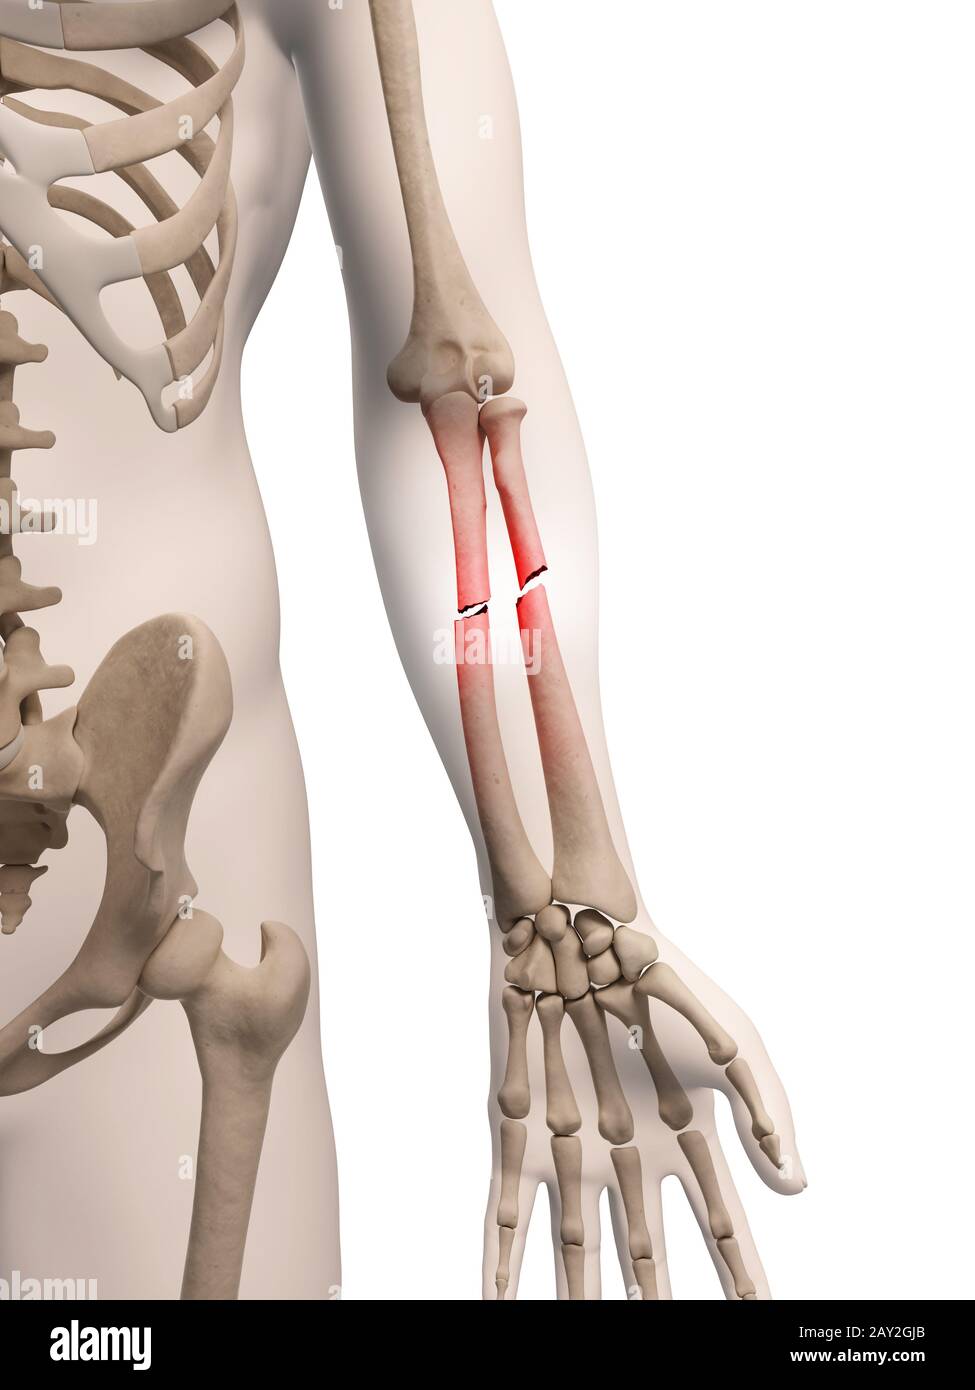 medical illustration of arm bone Stock Photo